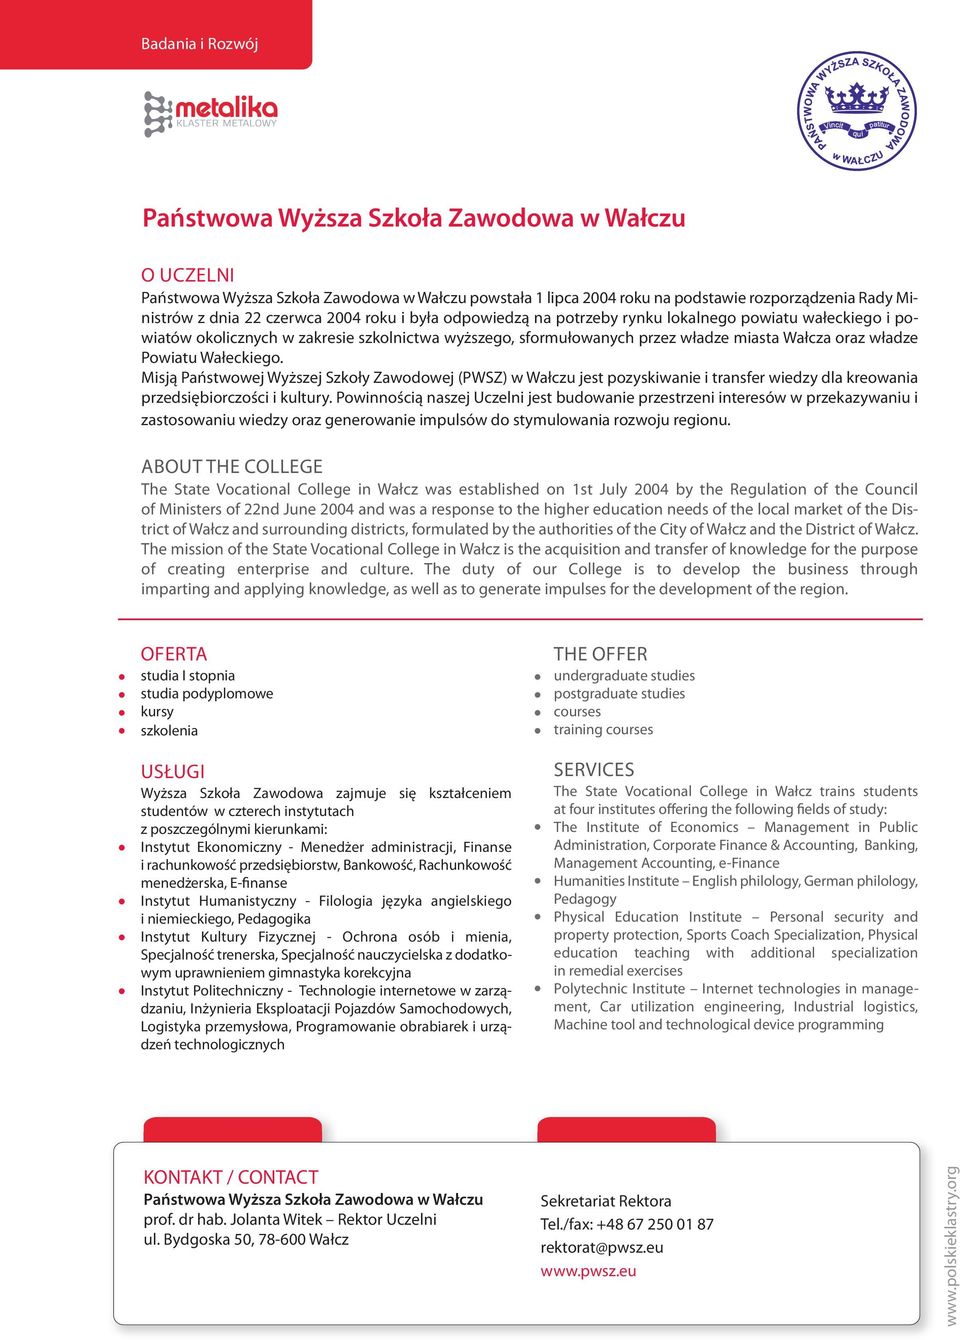 Wałeckiego. Misją Państwowej Wyższej Szkoły Zawodowej (PWSZ) w Wałczu jest pozyskiwanie i transfer wiedzy dla kreowania przedsiębiorczości i kultury.